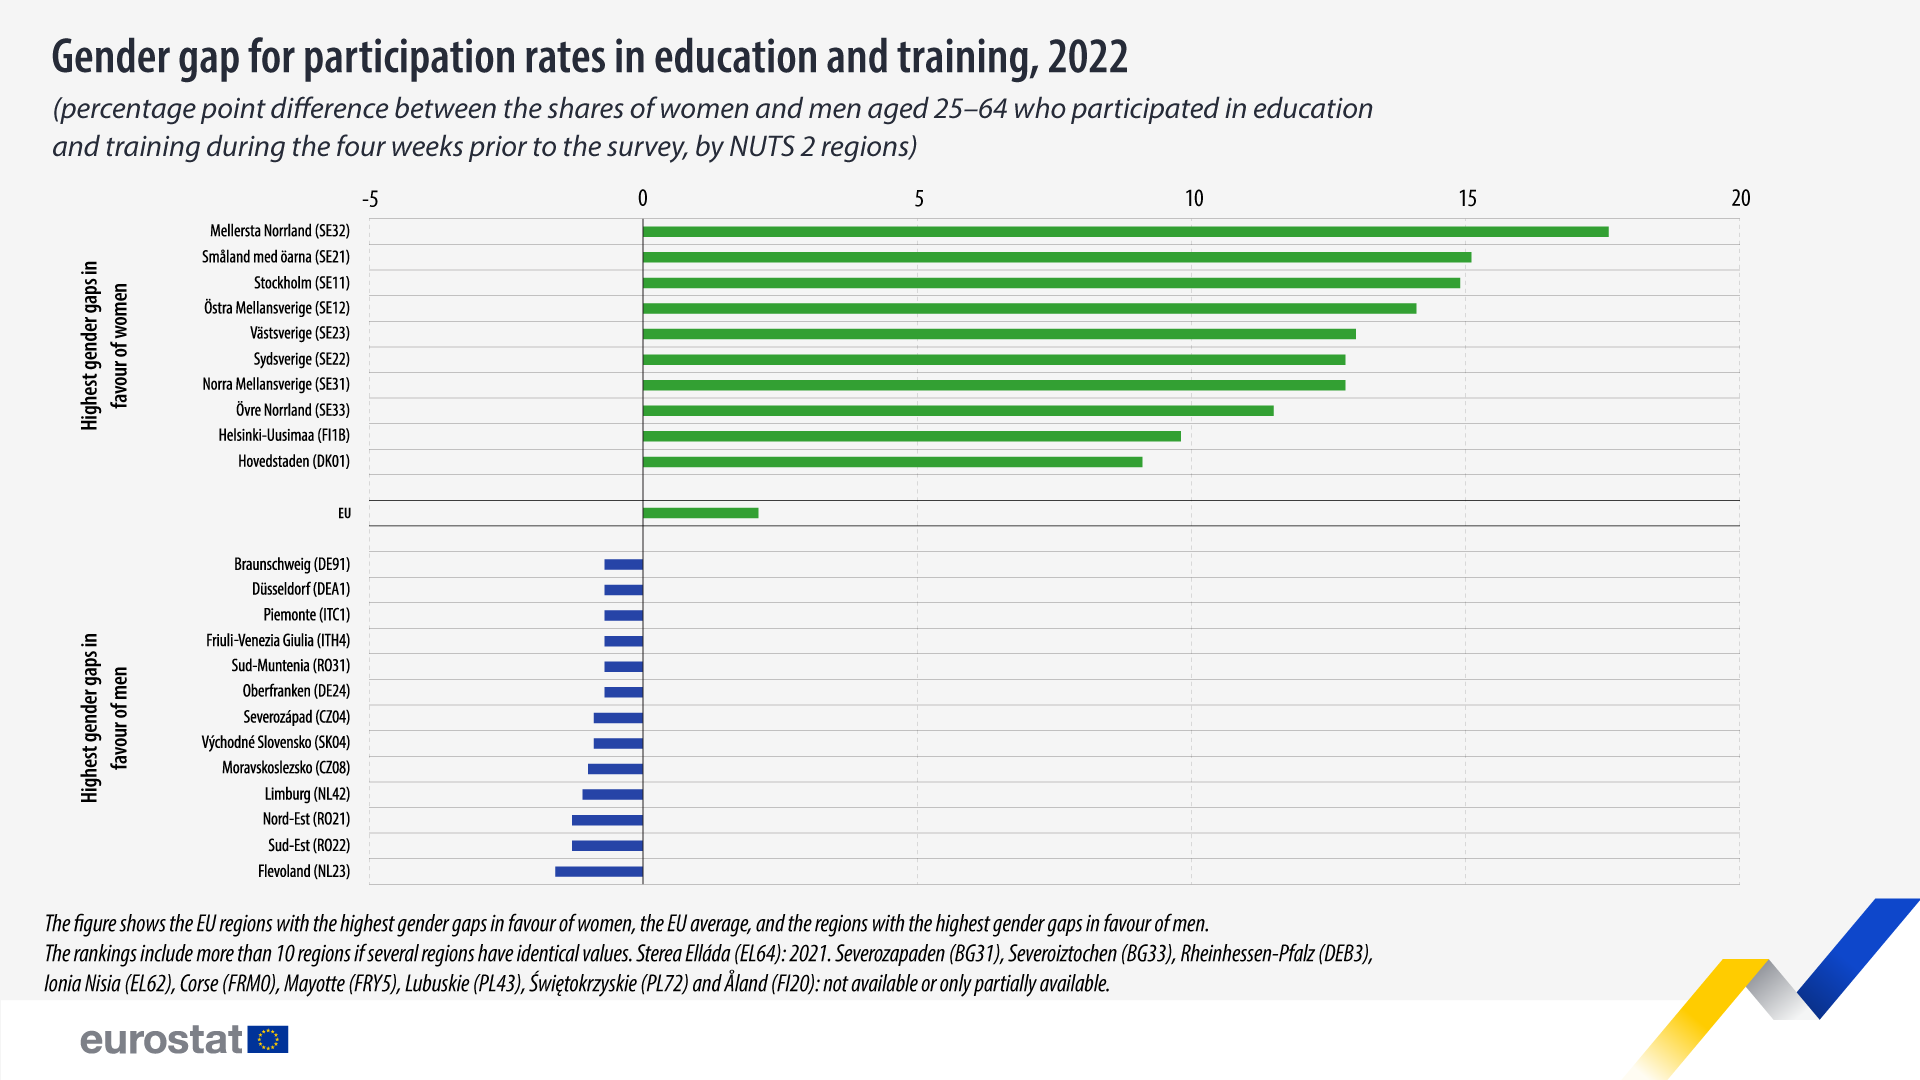 Хоризонтална стълбовидна диаграма: разлика между половете за нивата на участие в образованието и обучението, 2022 г. (разлика в процентни пунктове между дяловете на жените и мъжете на възраст 25-64 години, които са участвали в образование и обучение през четирите седмици преди проучването, по региони NUTS 2)